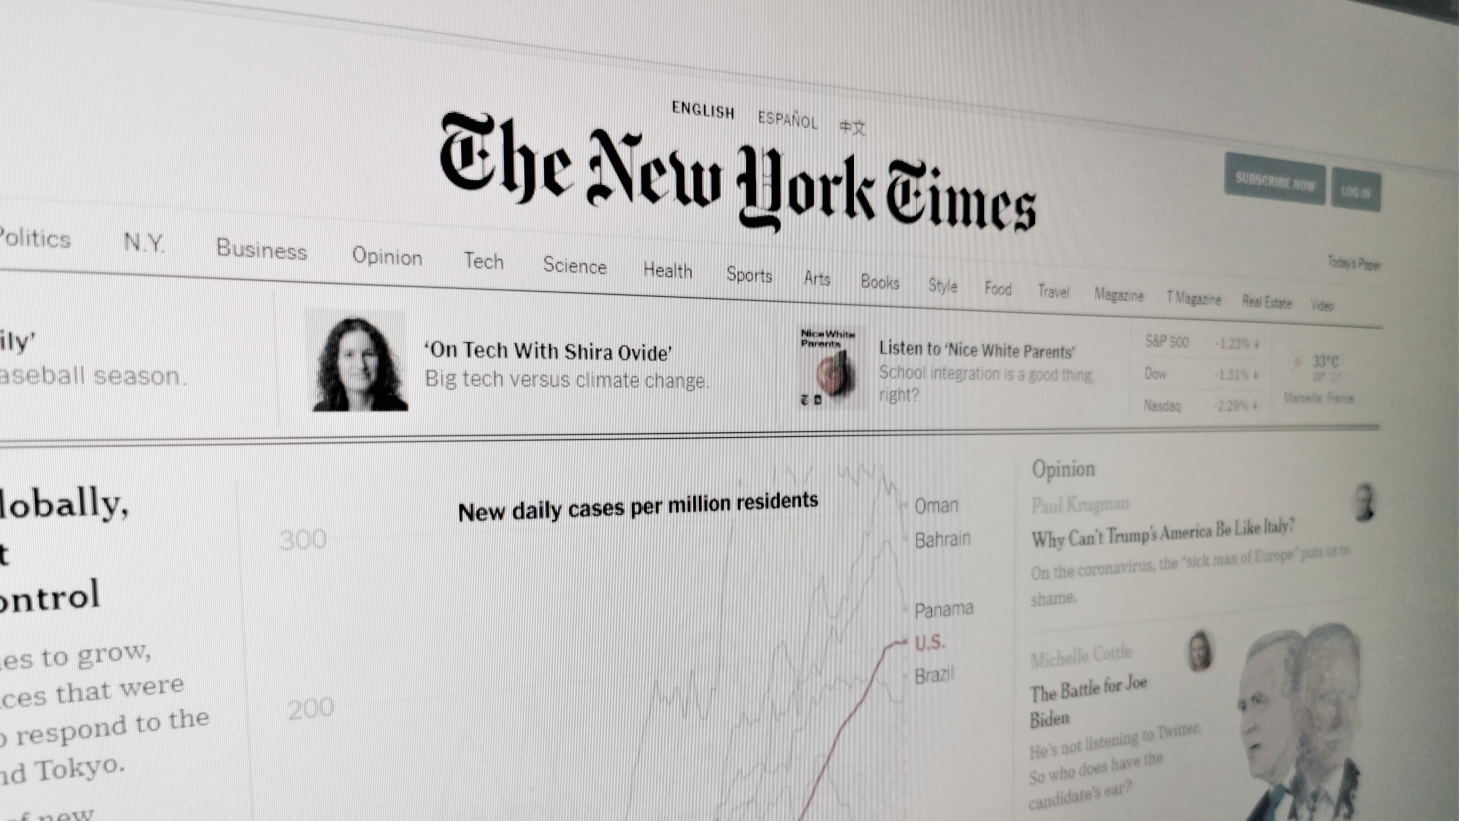 Le P.-D.G. du New York Times juge néfaste une trop grande réglementation de Google et Facebook